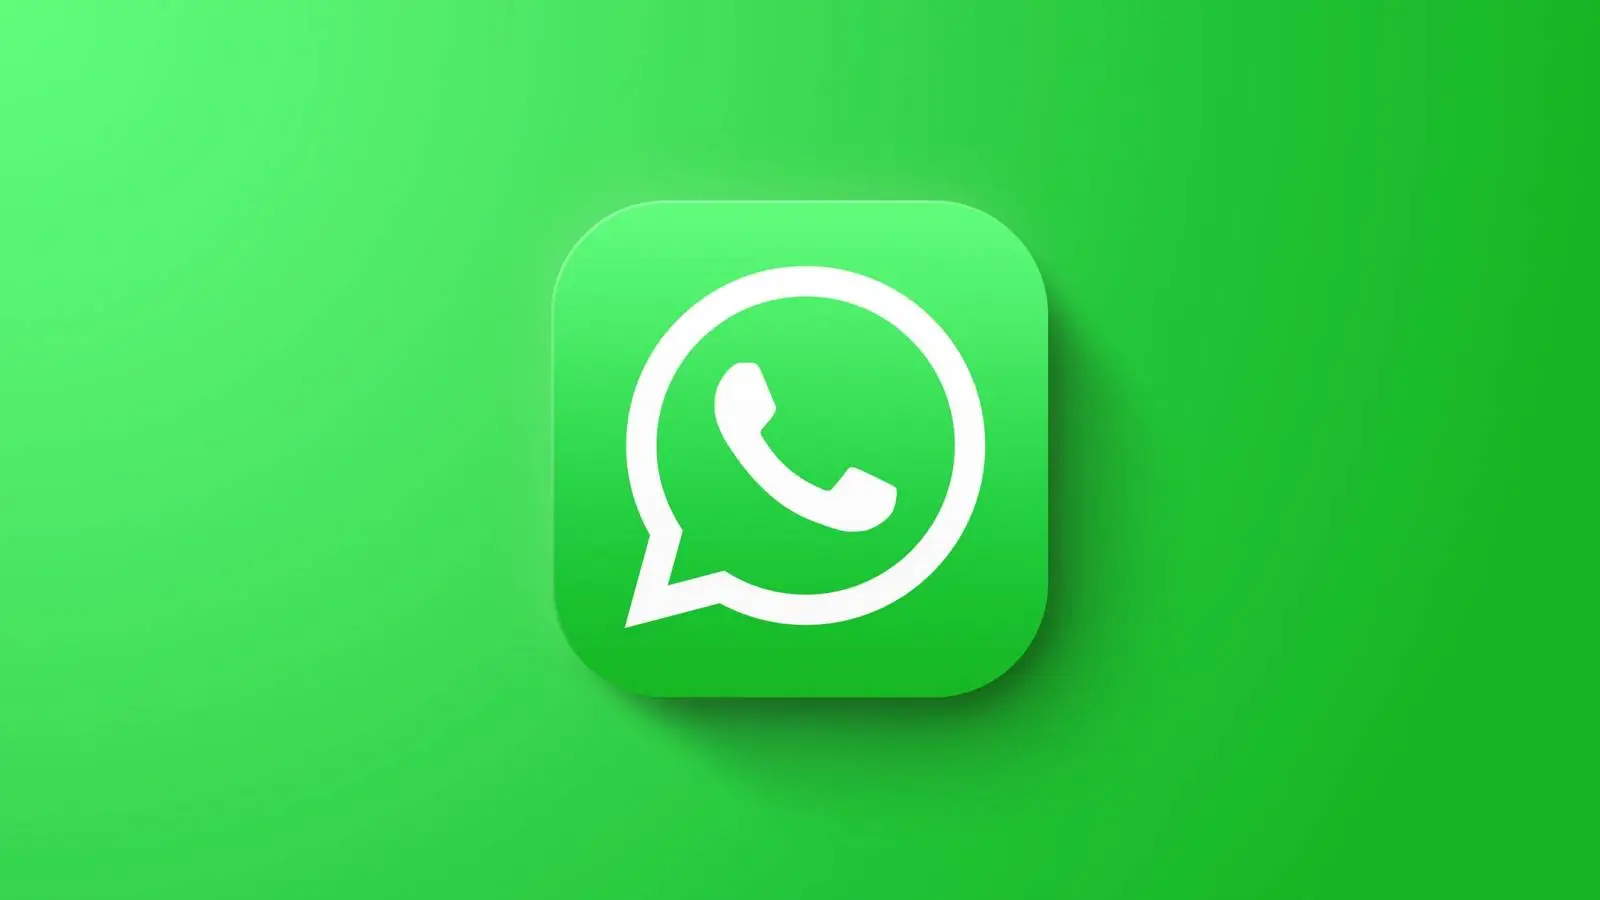 WhatsApp misst Milliarden iPhone- und Android-Nutzer